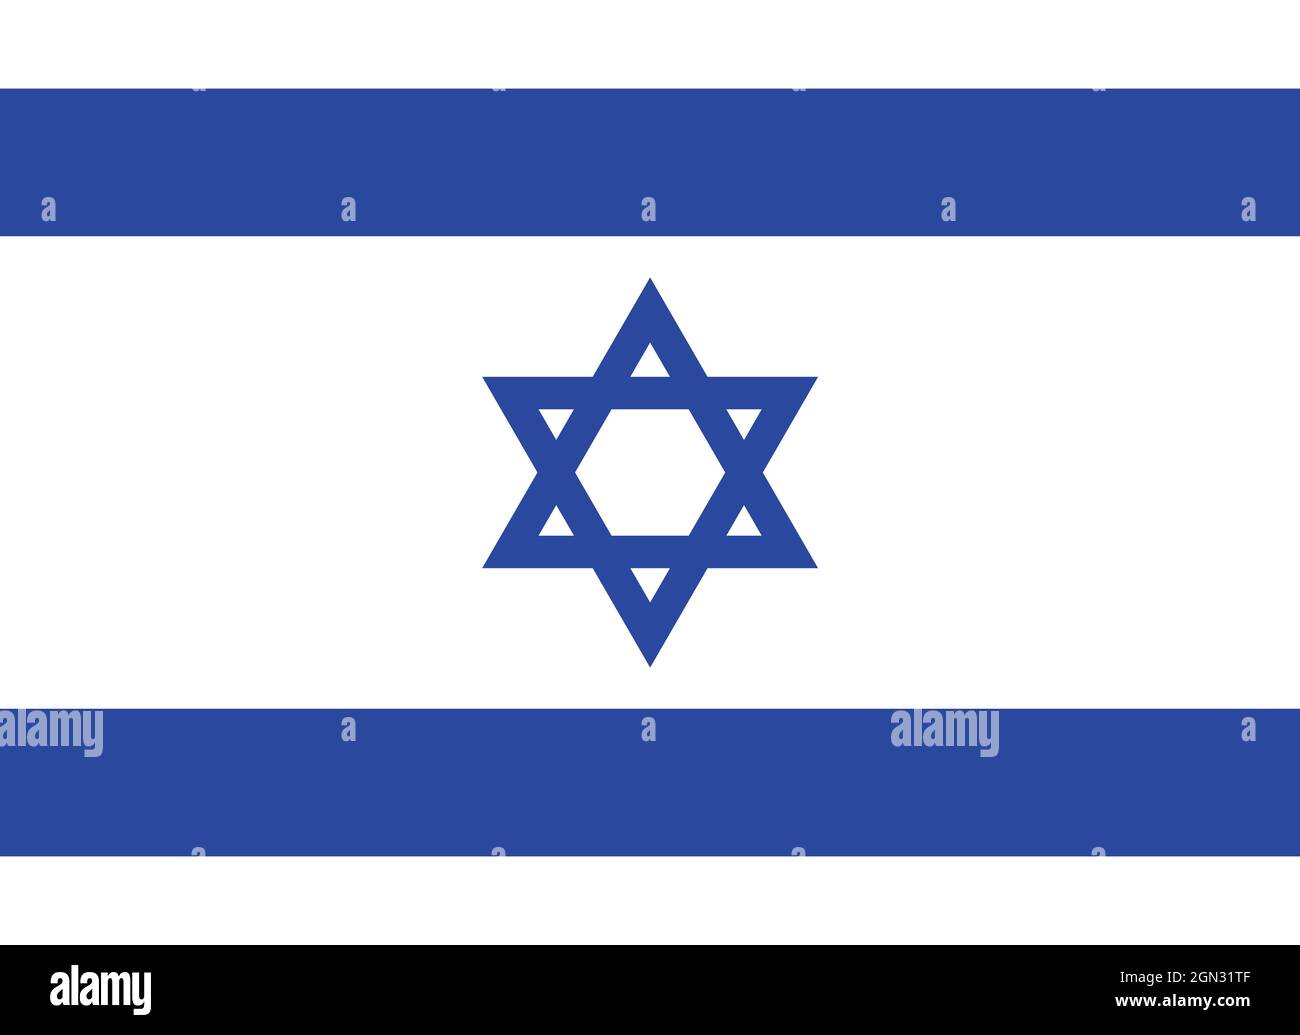 Nationalflagge Israels Originalgröße und Farben Vektorgrafik, Flagge Staat Israel verwendete Davidstern, Flagge Zion oder israelische Flagge Stock Vektor